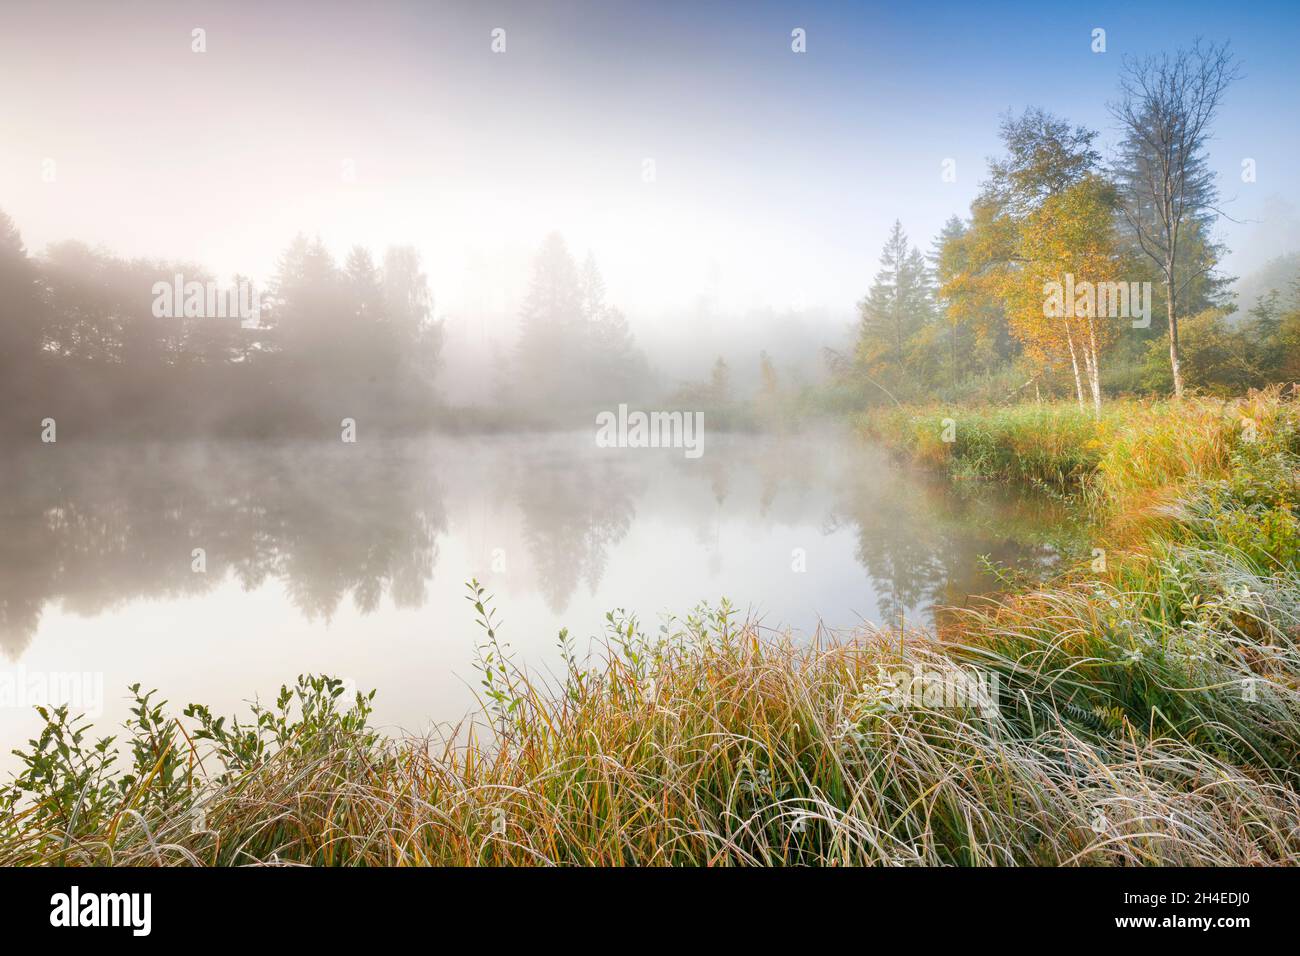 Herbstliche Stimmung an von Bäumen gesäumtem Weiher im Naturschutzgebiet Wildert in Illnau, Raureif bedeckt Vegetation und Nebelschwaden schweben über Stock Photo